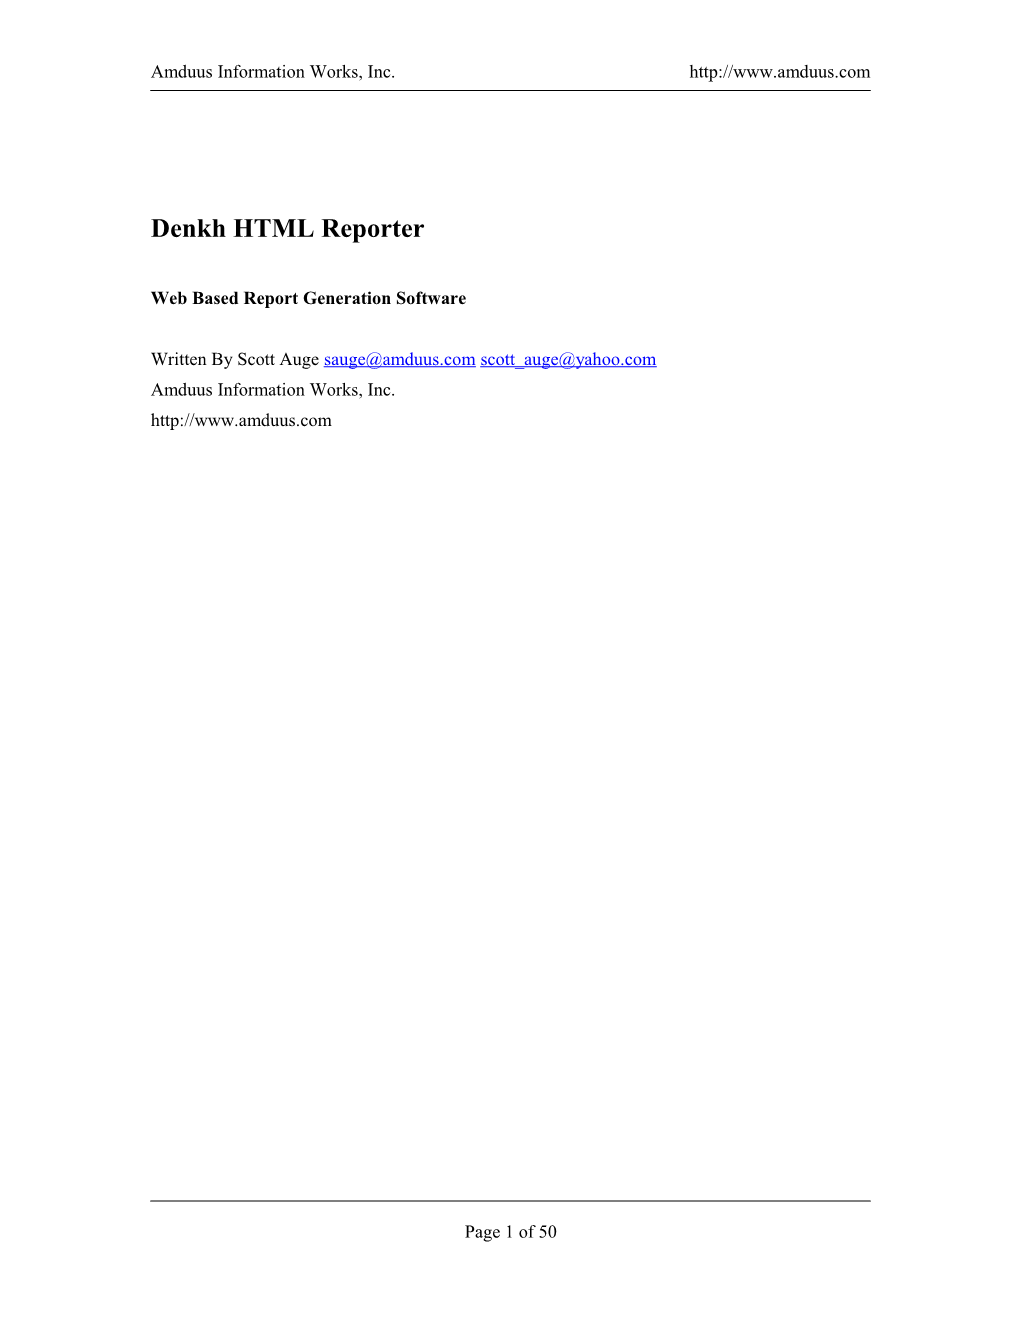 Denkh HTML Reporter